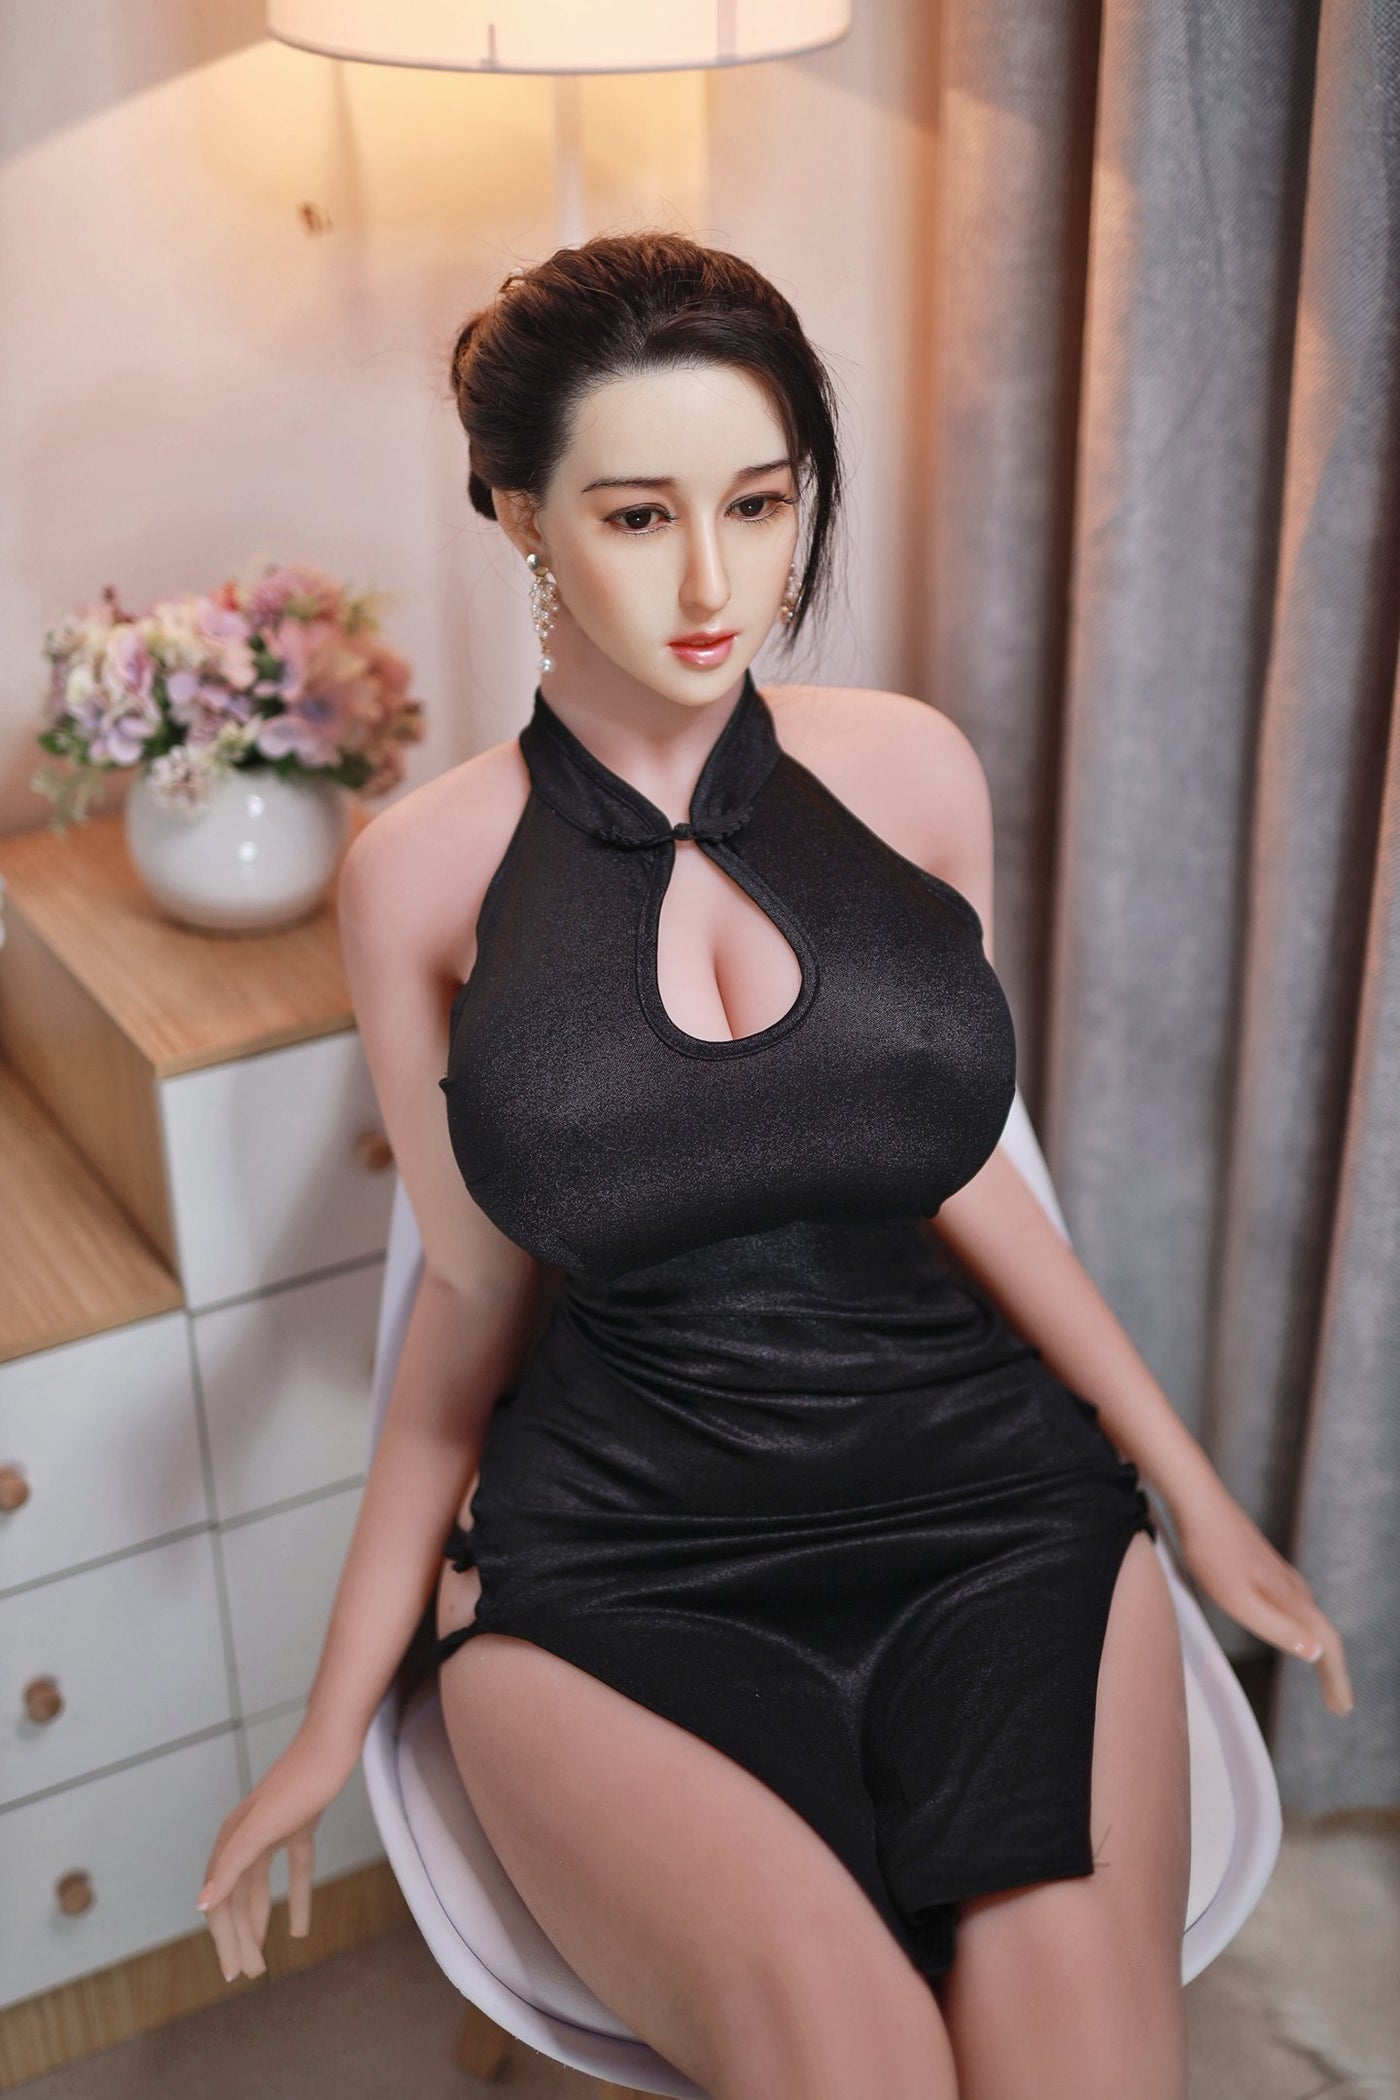 Neodoll Sugar babe - Chloe - Silicone TPE Hybrid Sex Doll - Gel Breast - Uterus - 170cm - Natural